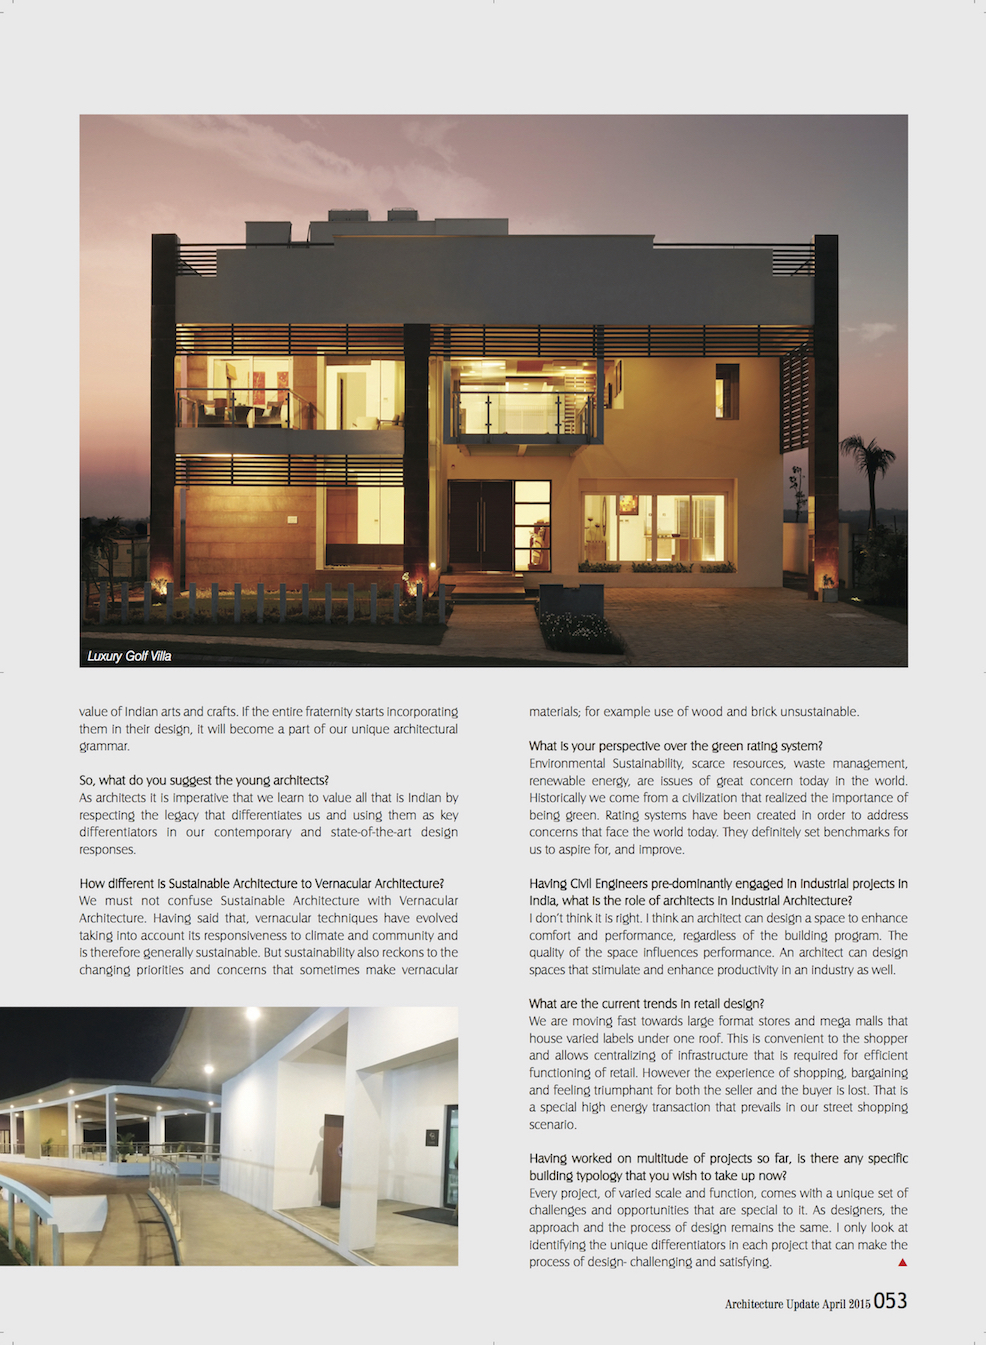 Architecture Update Magazine - Sheila Sri Prakash